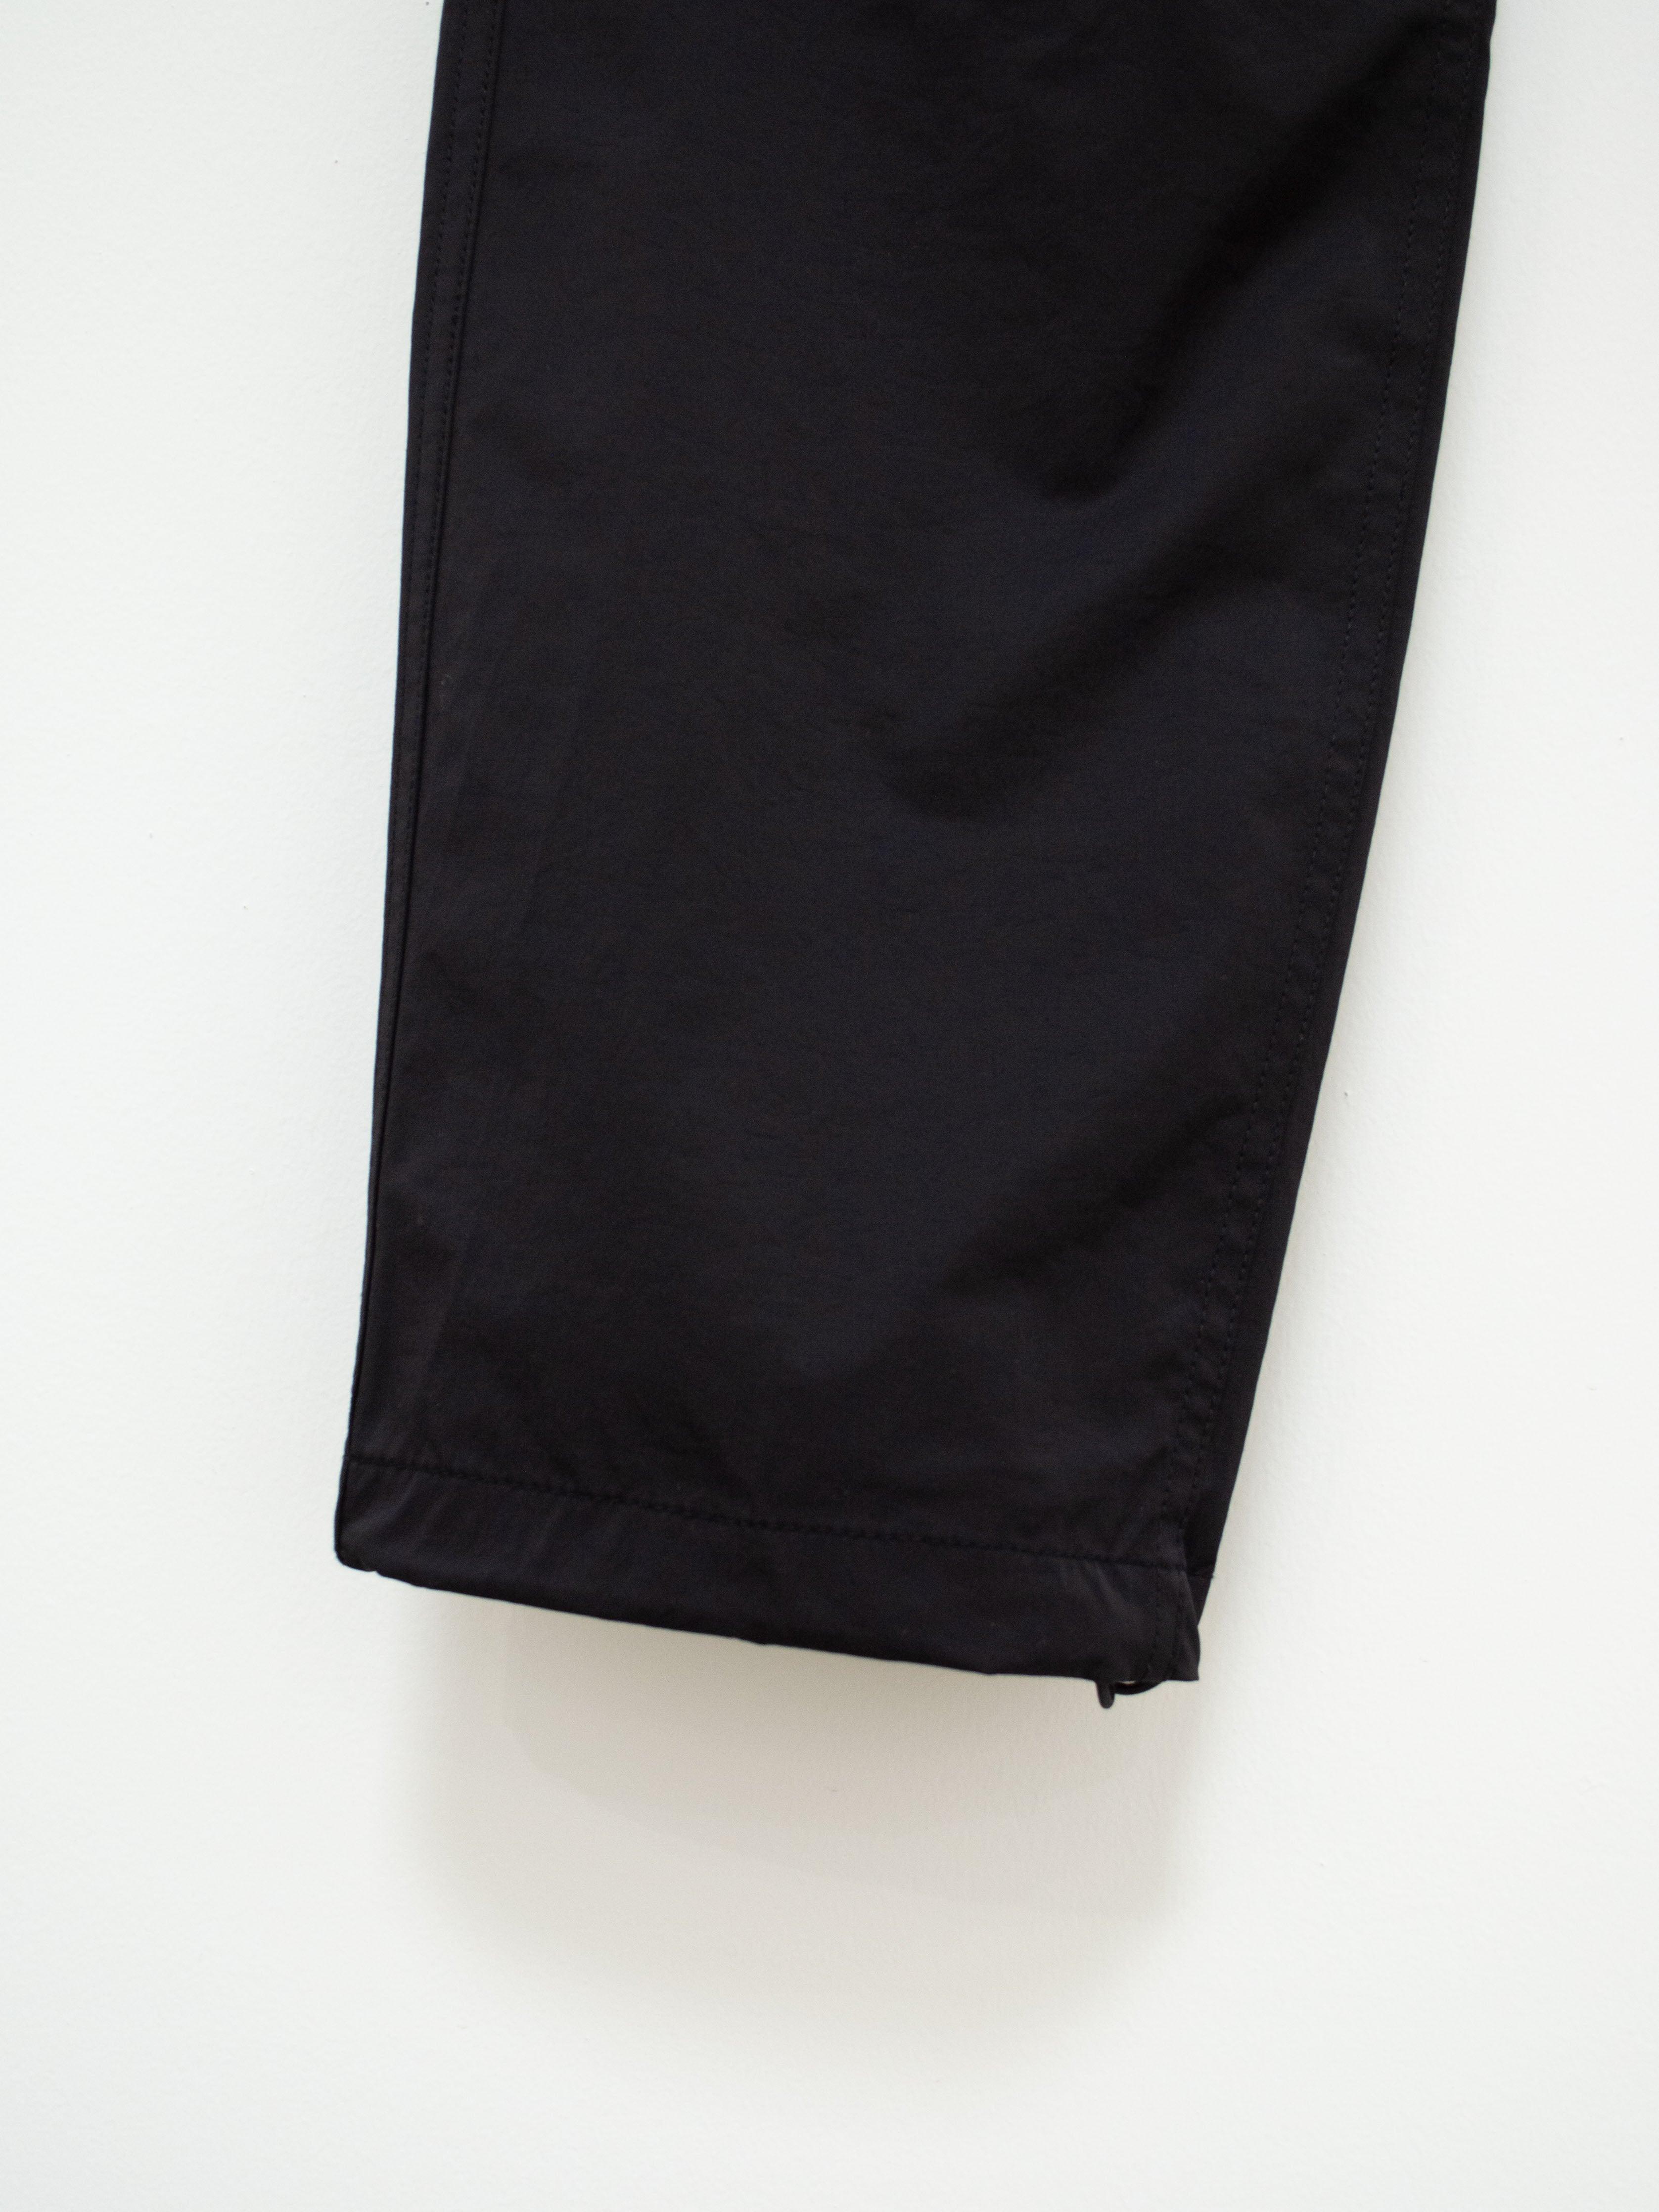 Namu Shop - CAYL Mountain Pants 2 - Black